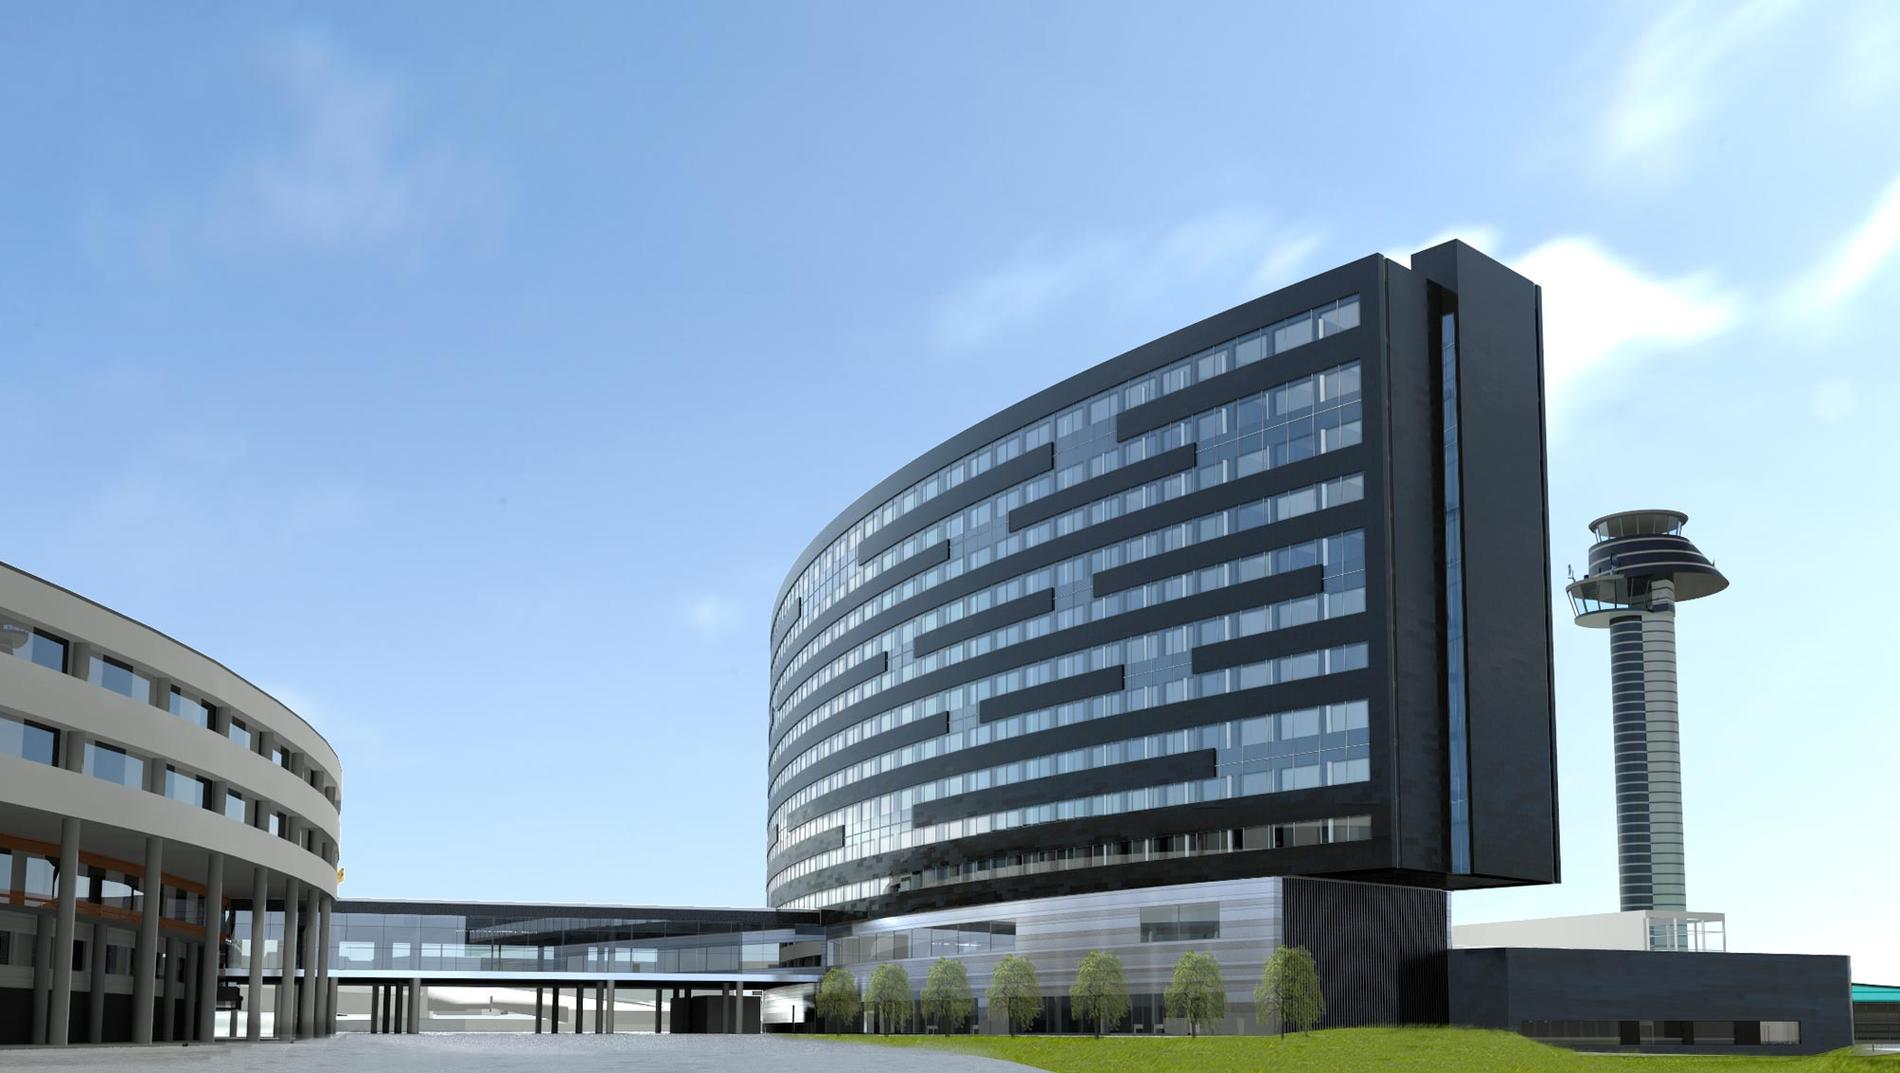 CLARION HOTEL ARLANDA Öppnar november 2012. Det 14 våningar höga hotellet får 414 rum och byggs i anslutning till Sky City på Arlanda flygplats.